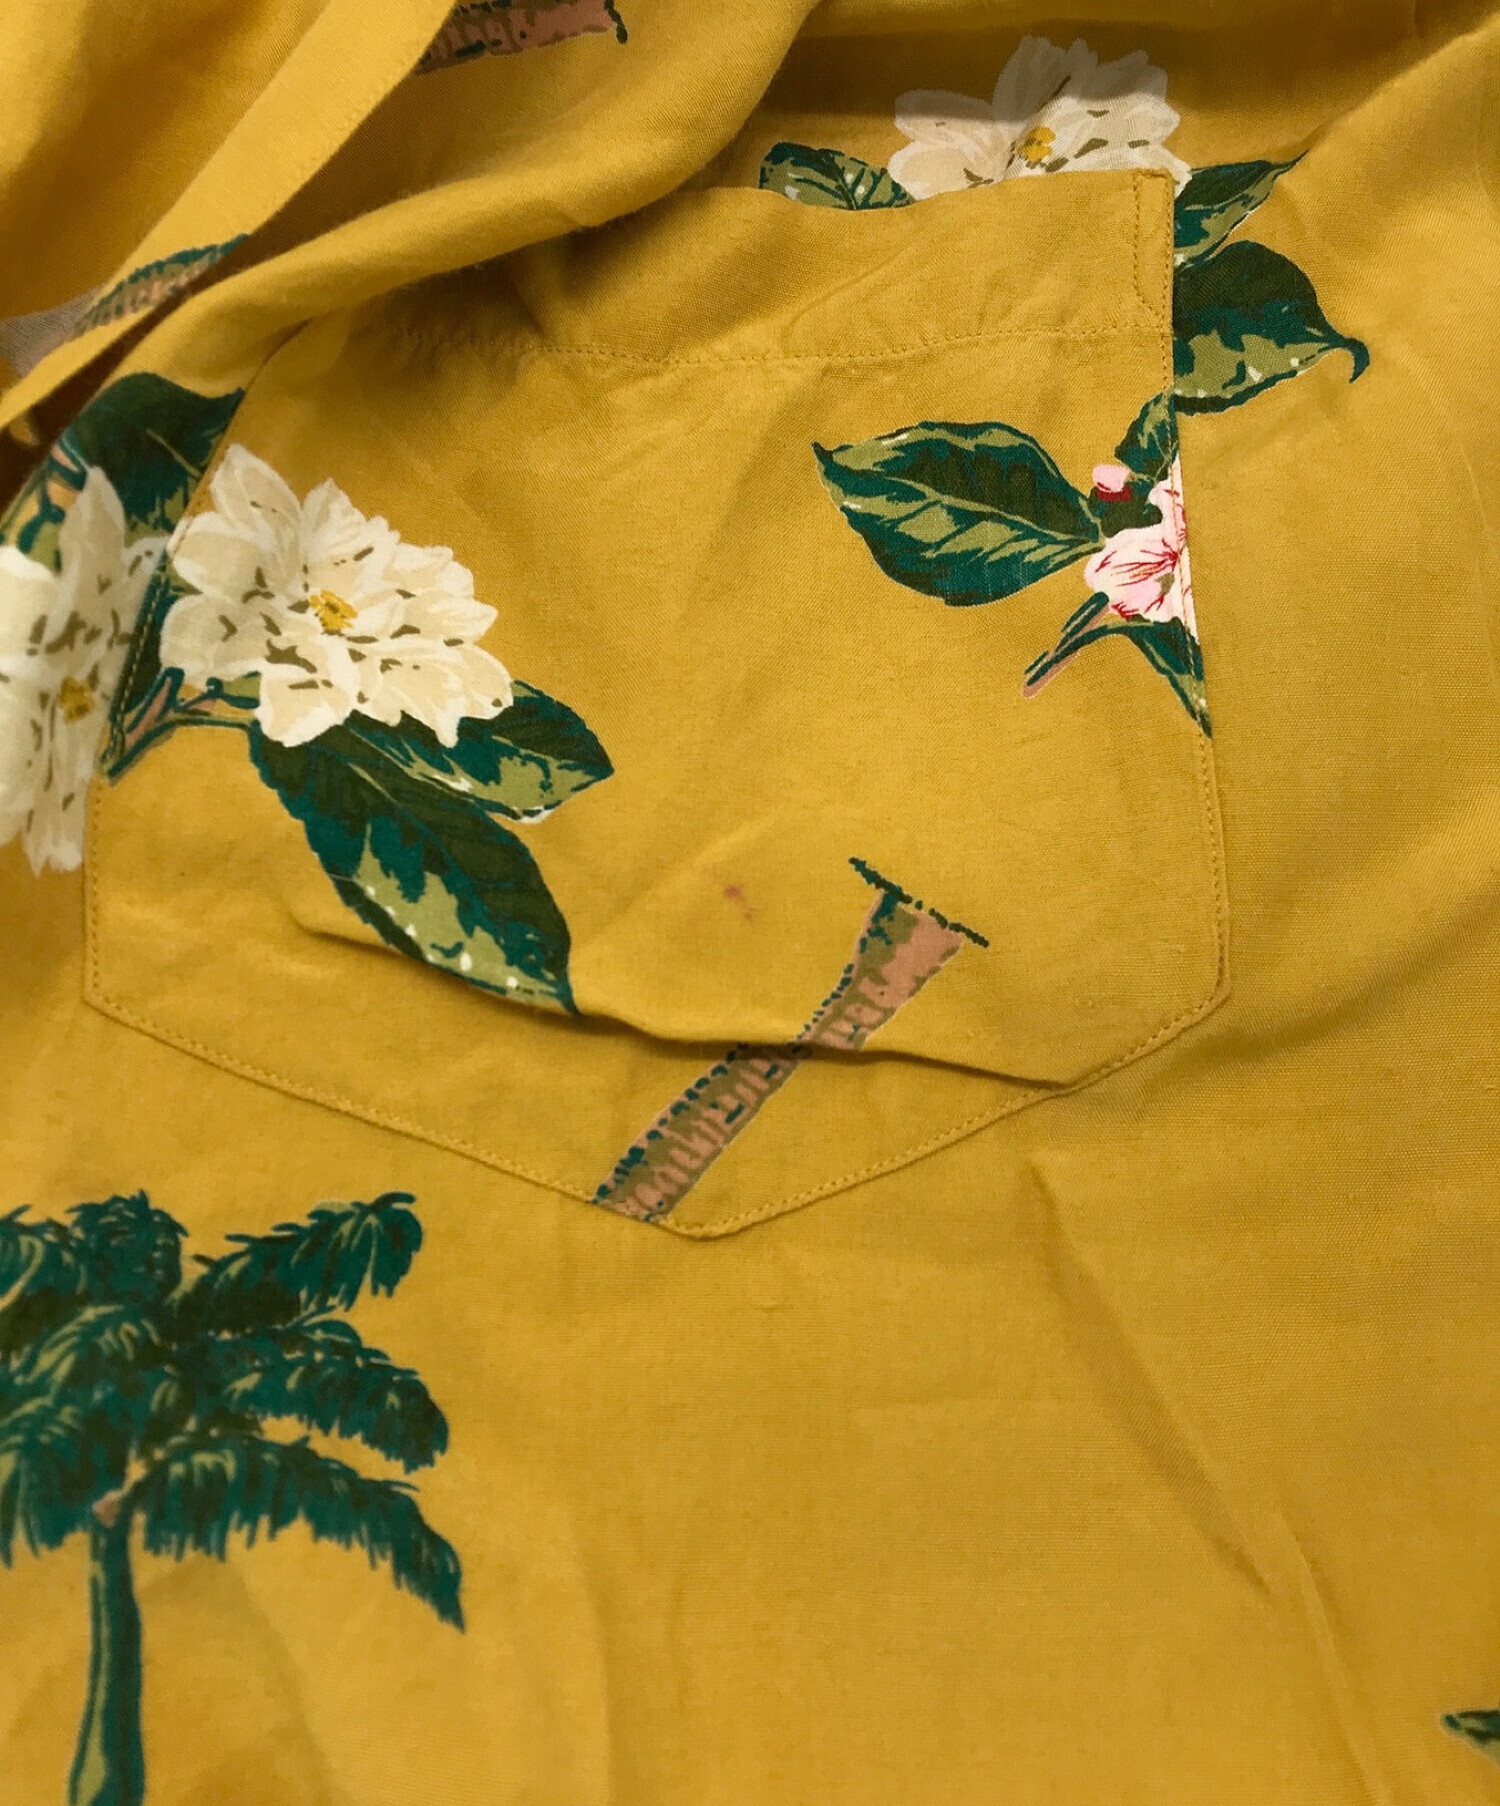 KARL HELMUT (カールヘルム) 花柄オープンカラーシャツ イエロー サイズ:表記なし（実寸サイズをご参照ください）